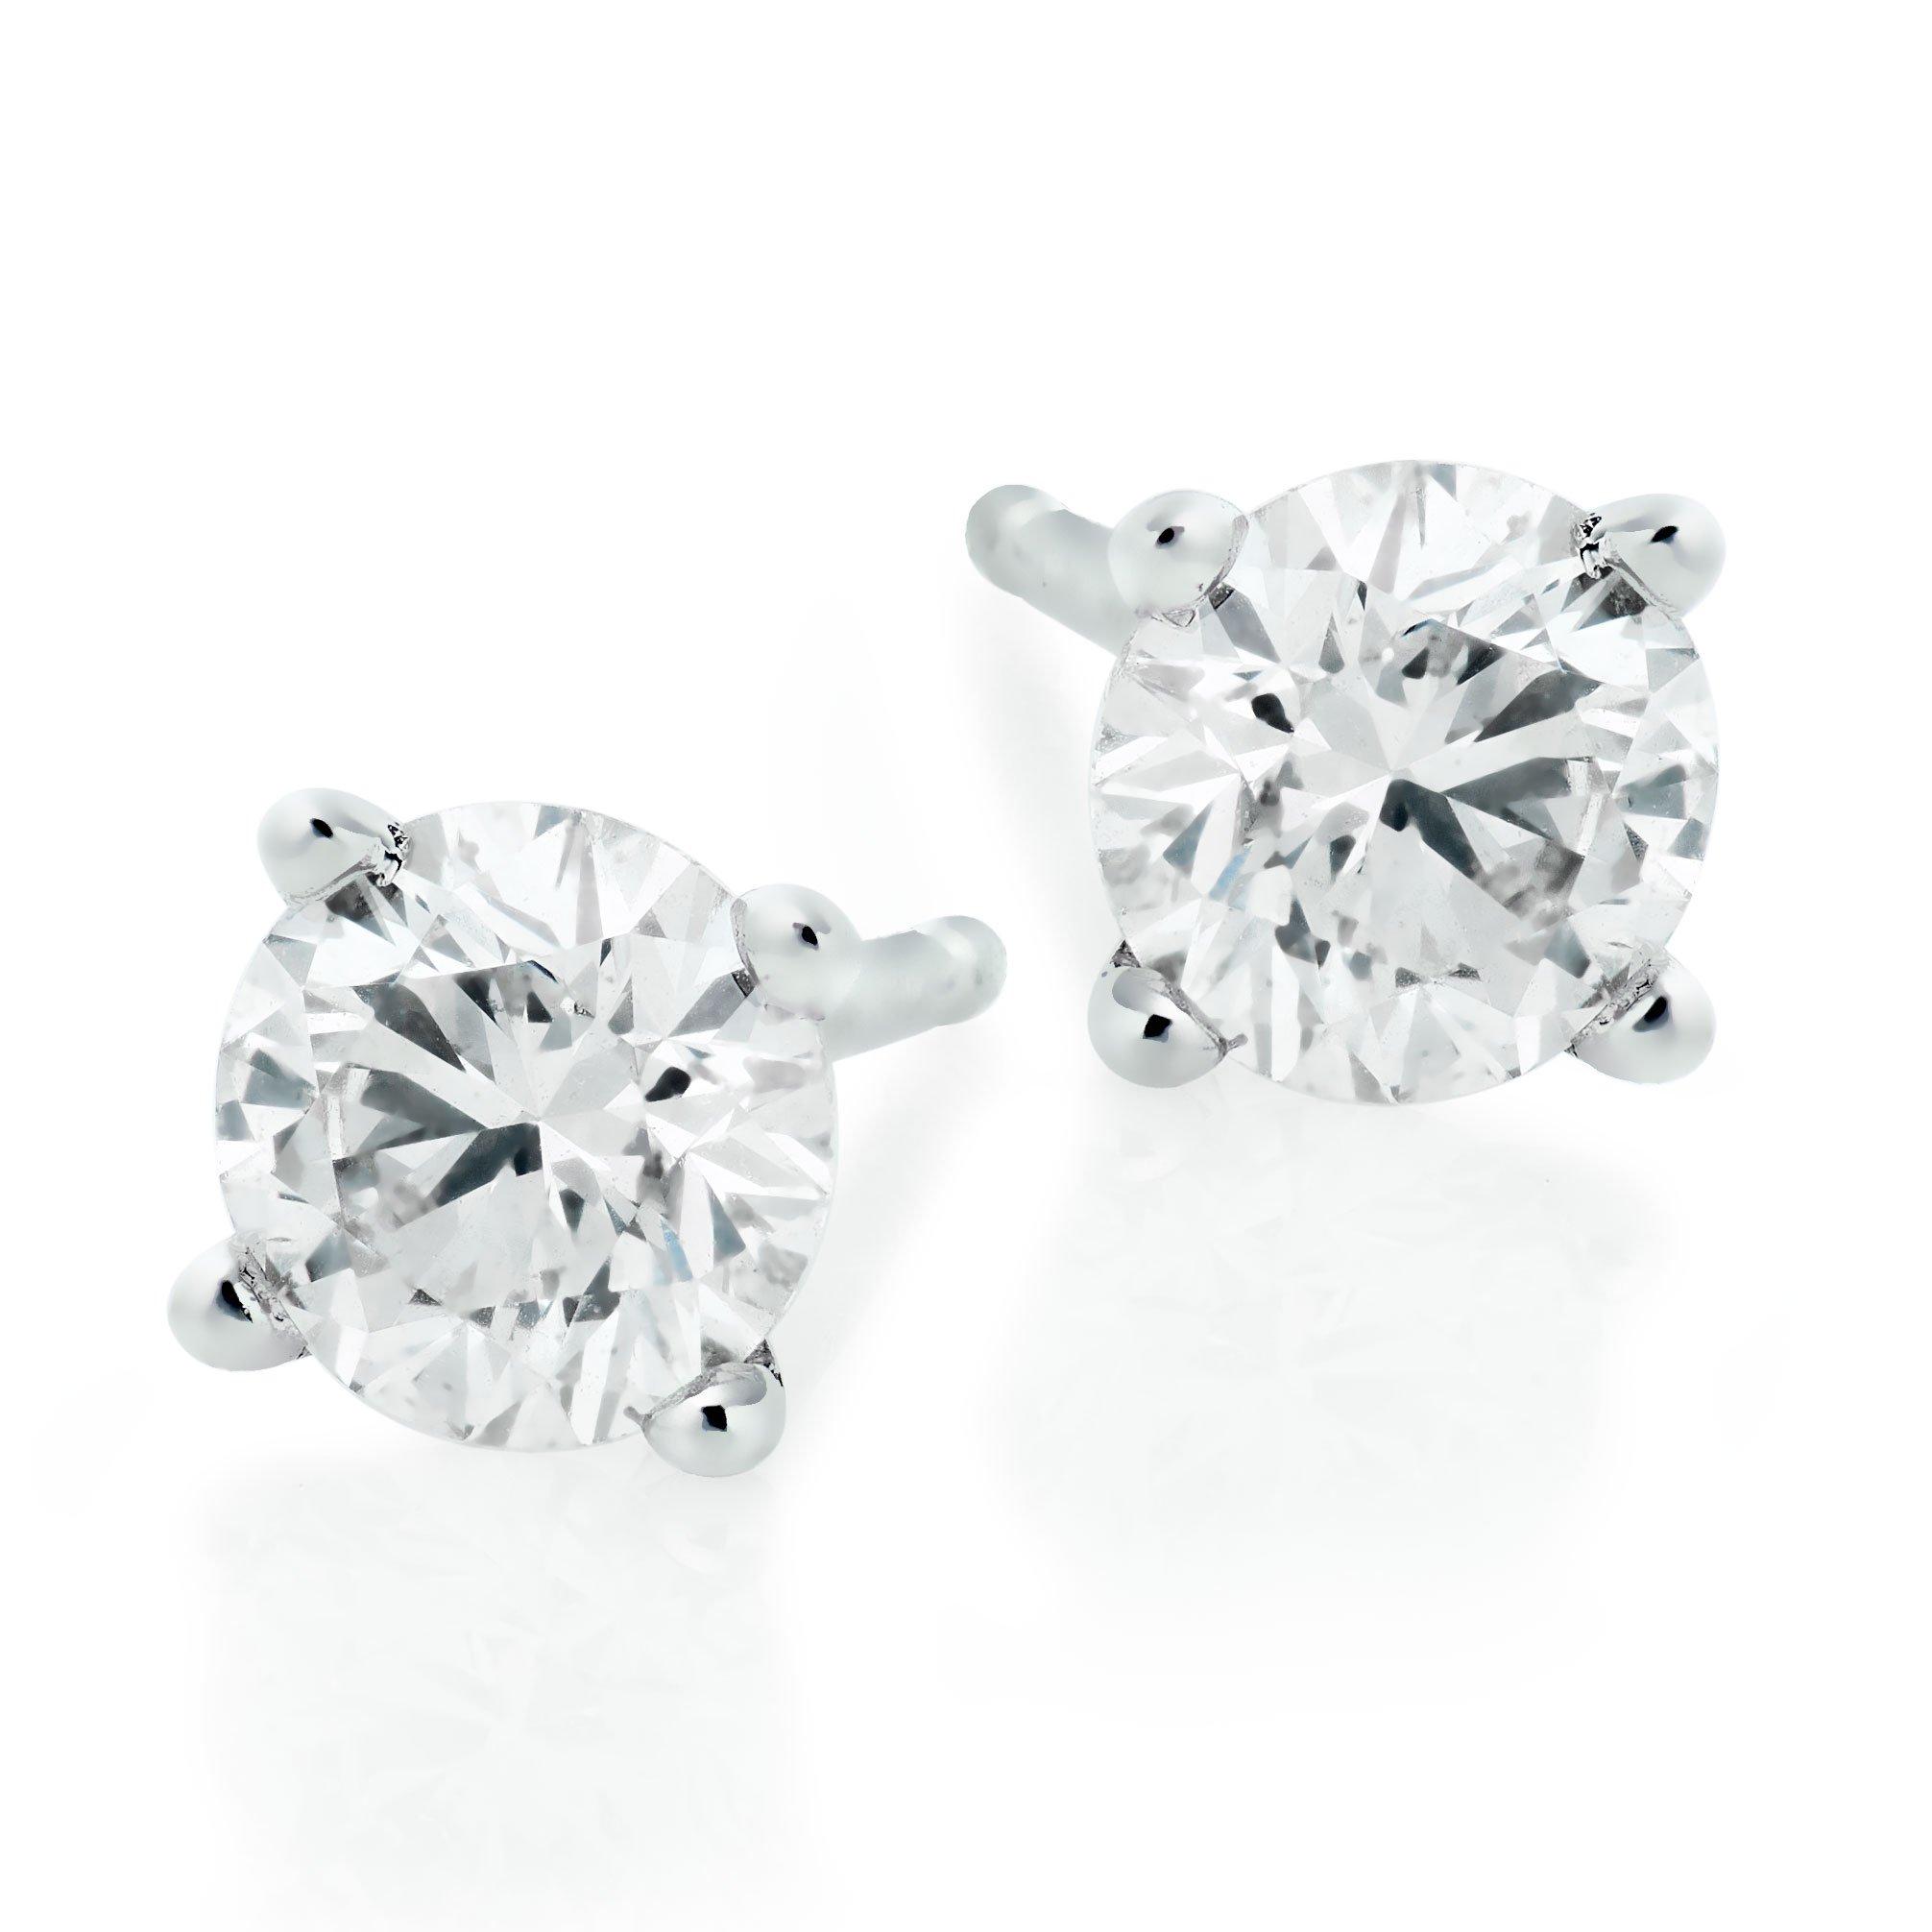 Platinum Diamond Stud Earrings